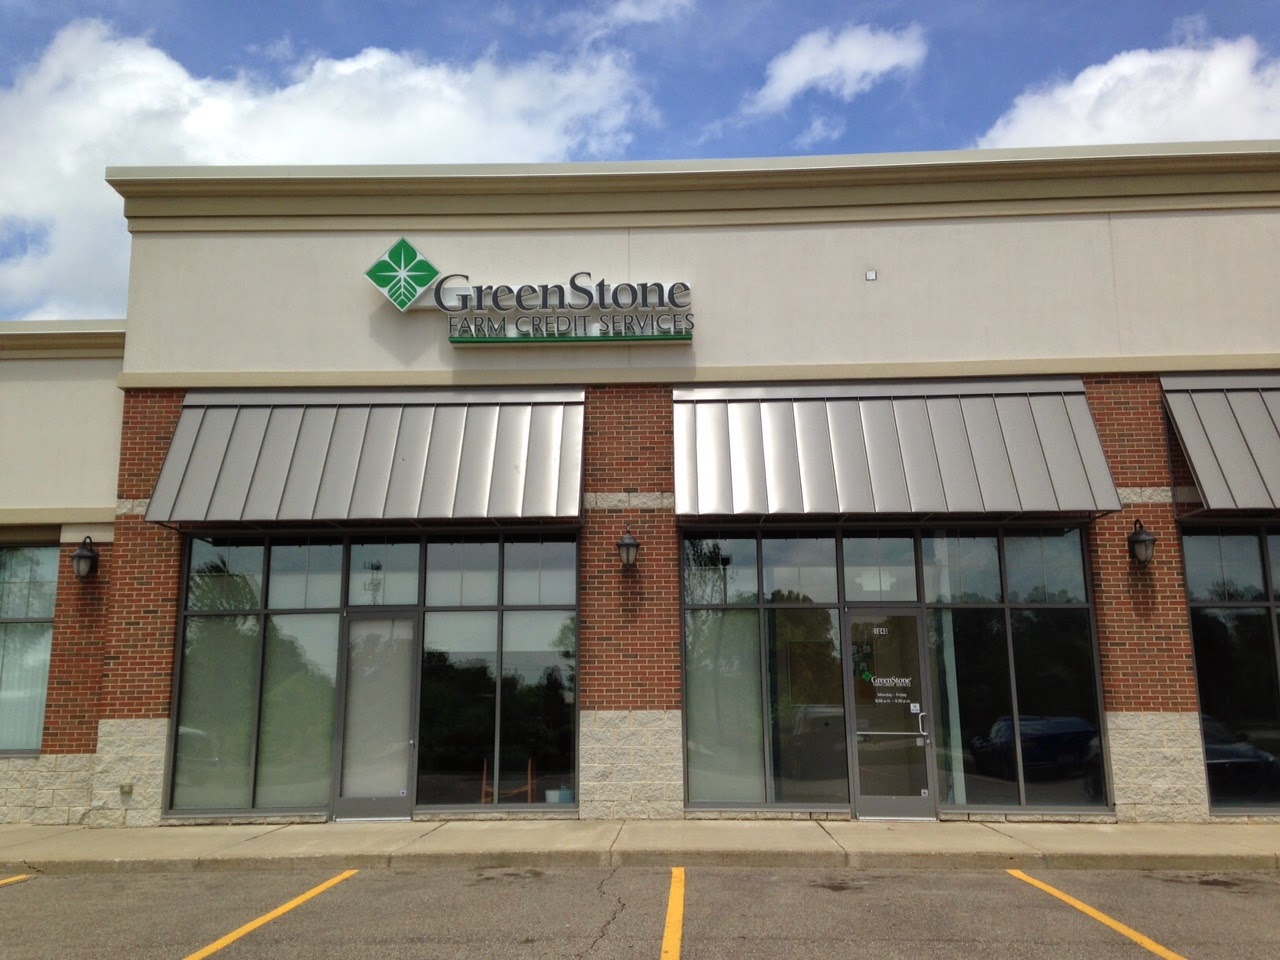 GreenStone Farm Credit Services